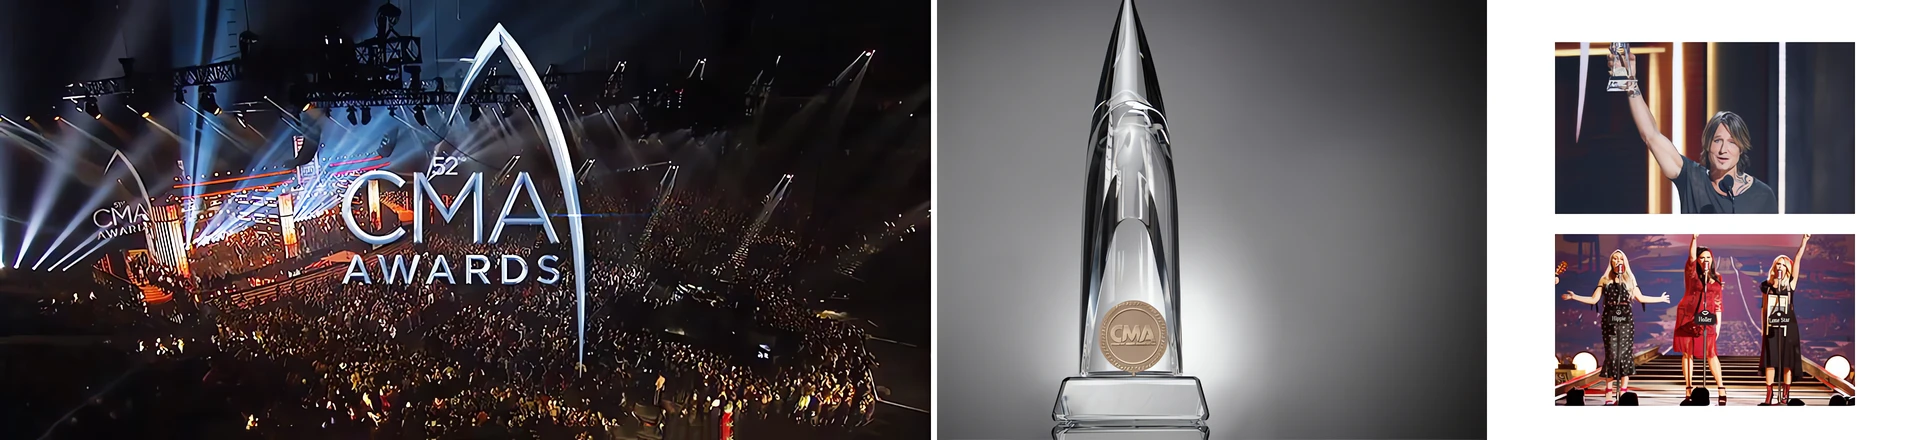 CMA Awards z zestawami bezprzewodowymi Shure Axient Digital